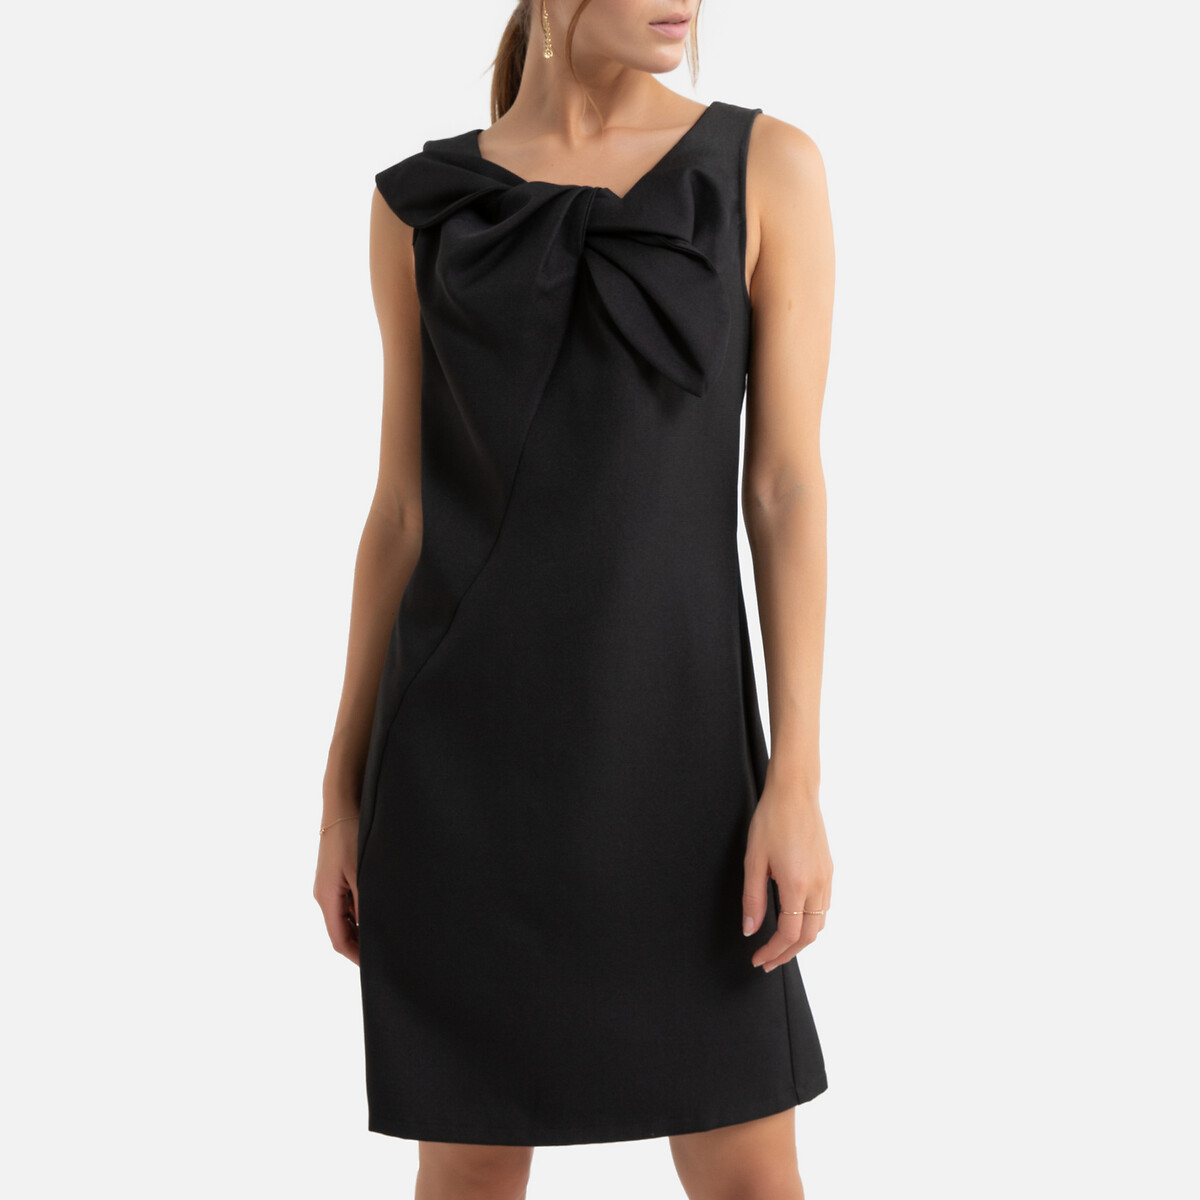 Платье La Redoute Короткое расклешенное бантик спереди XS черный, размер XS - фото 1